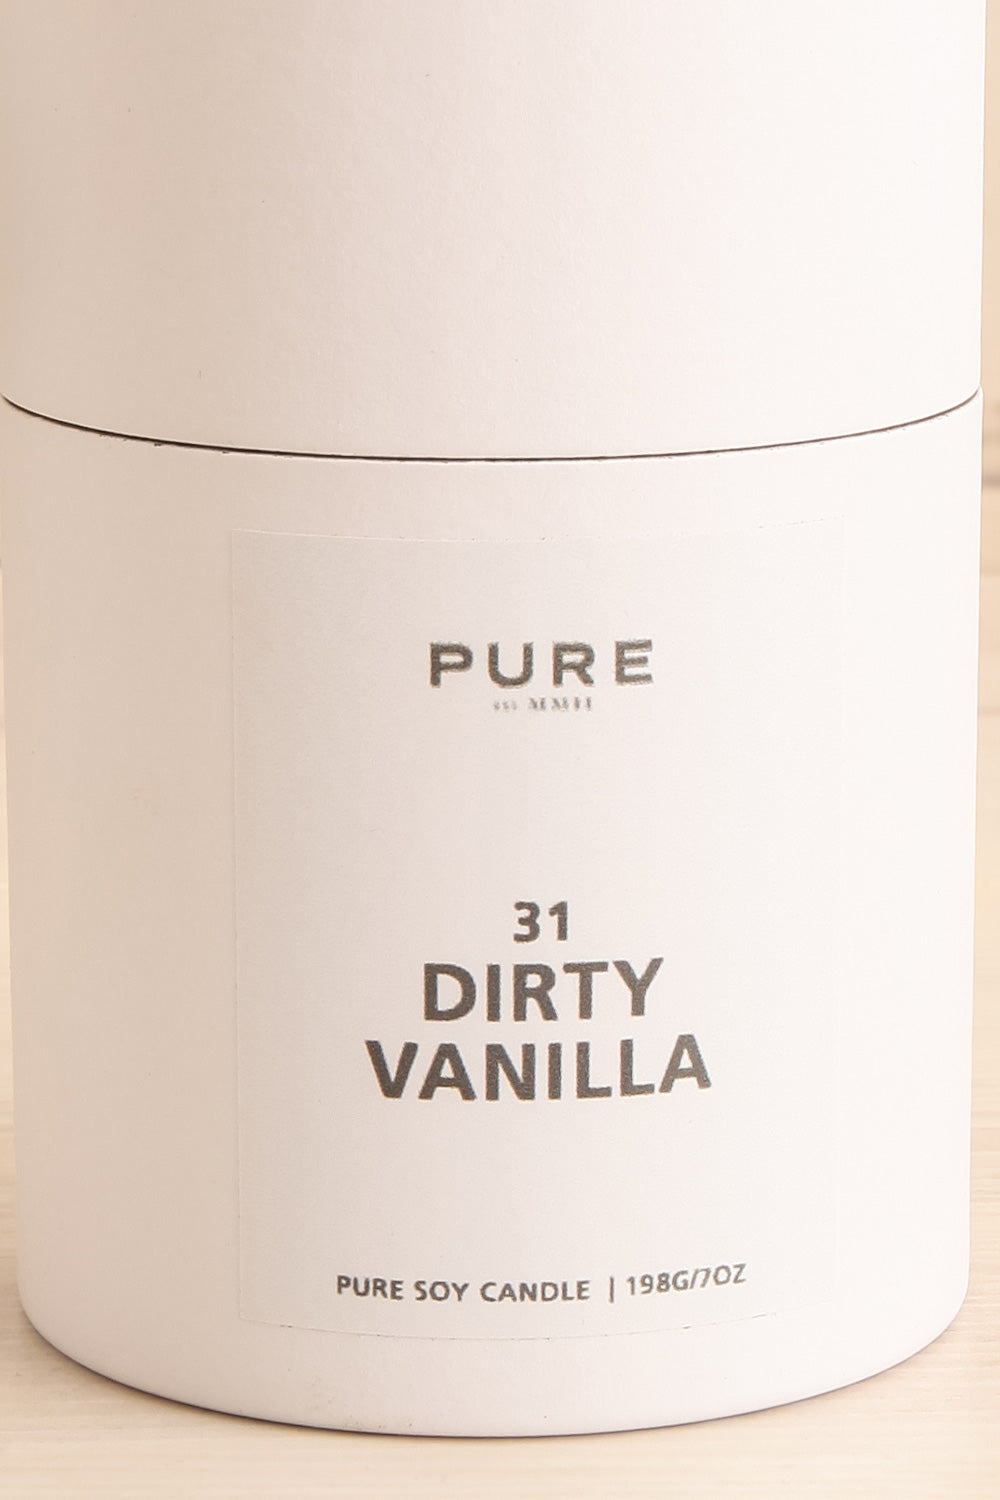 Dirty Vanilla Candle | Maison garçonne box close-up